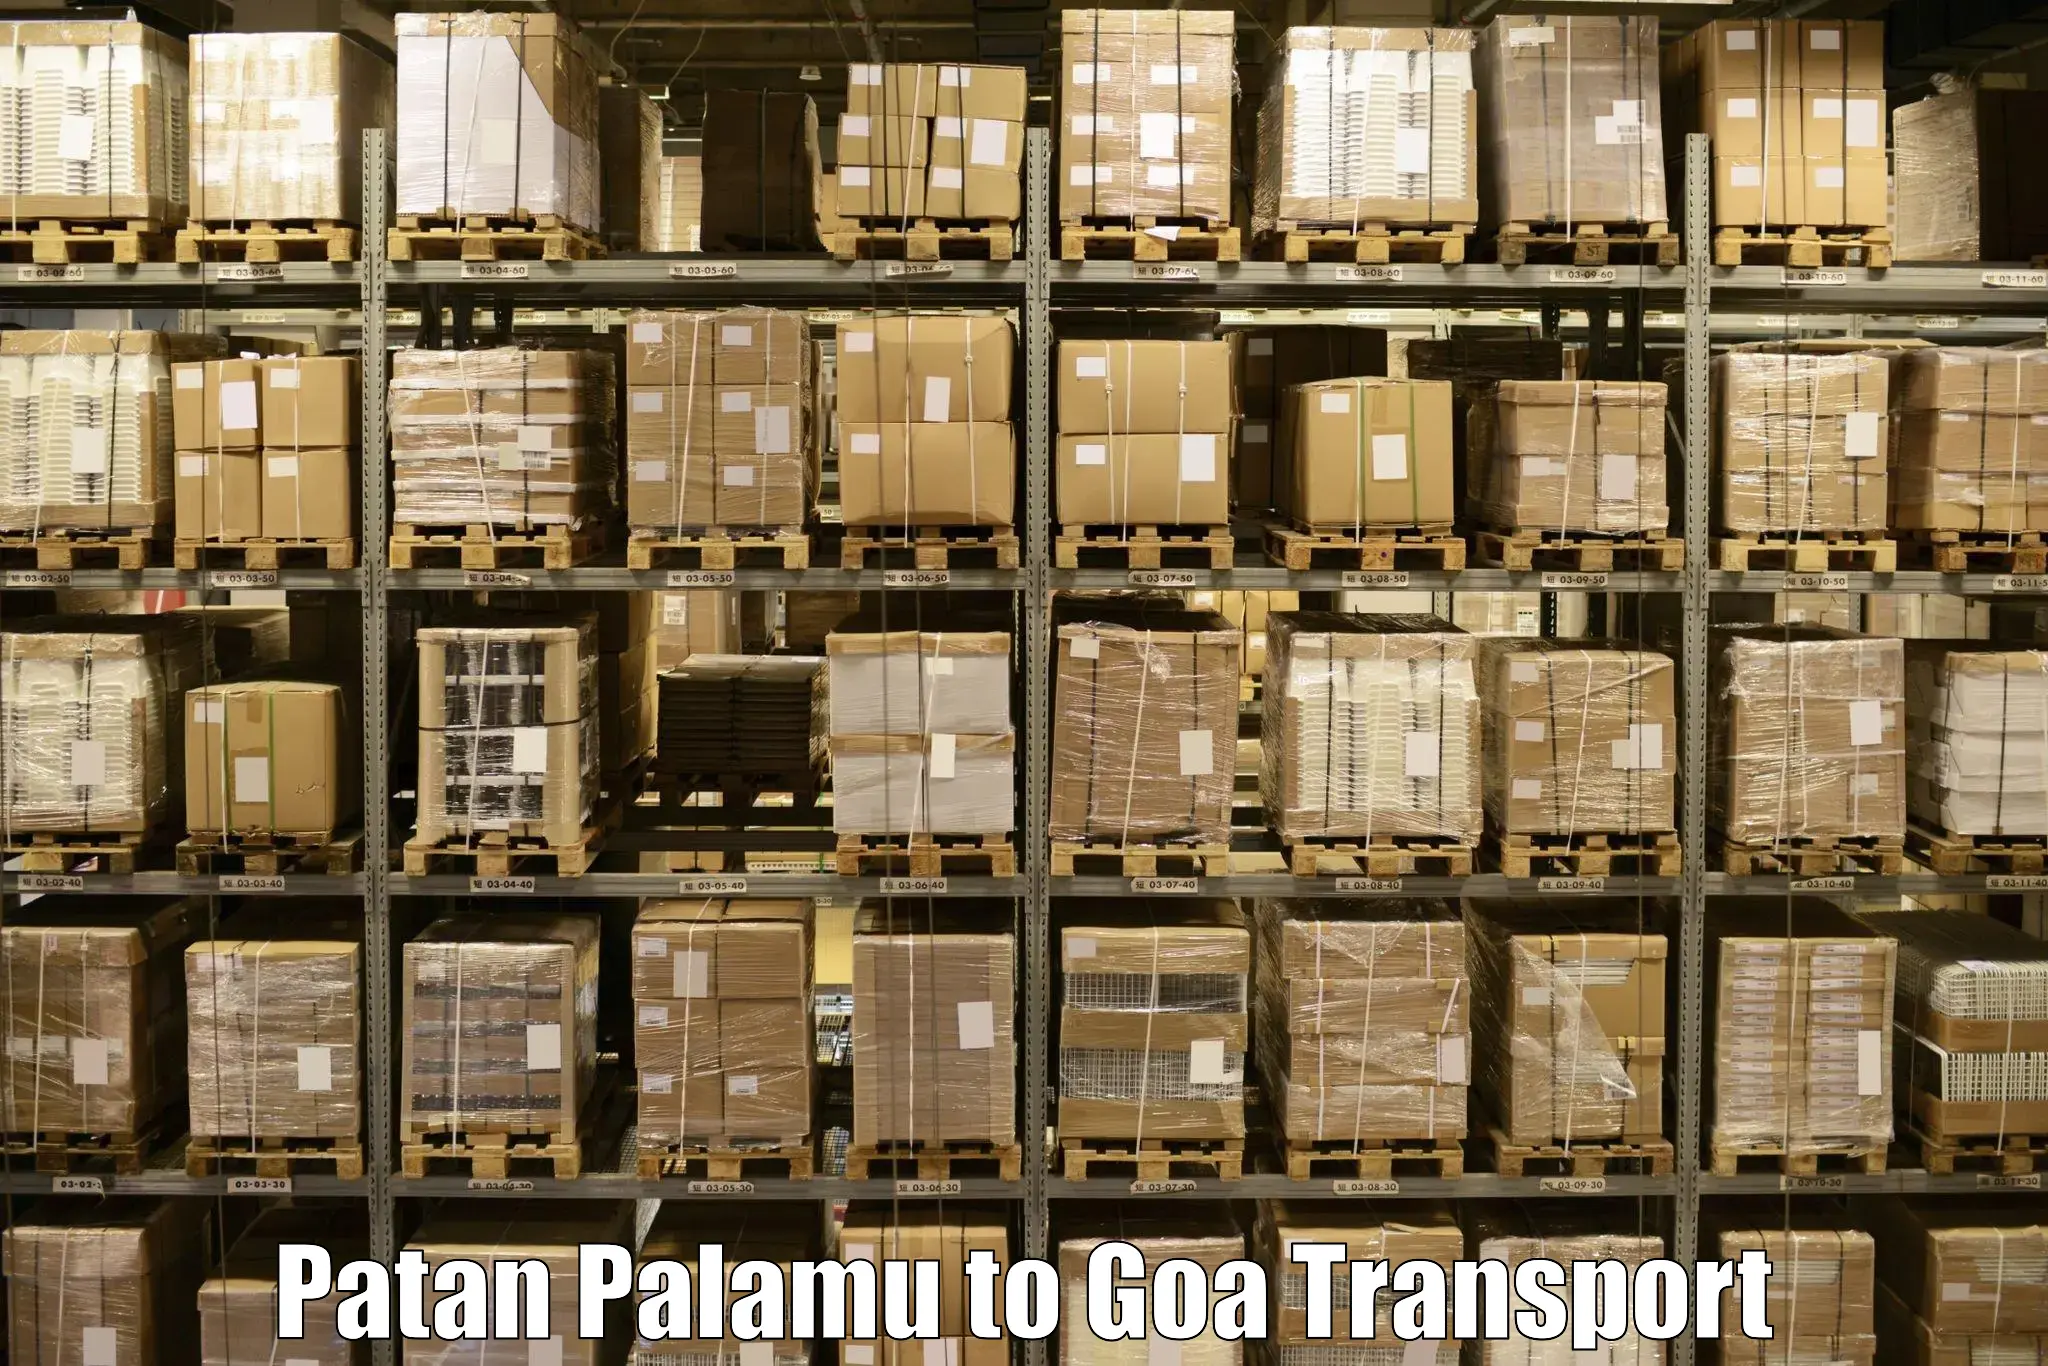 Bike transport service Patan Palamu to NIT Goa